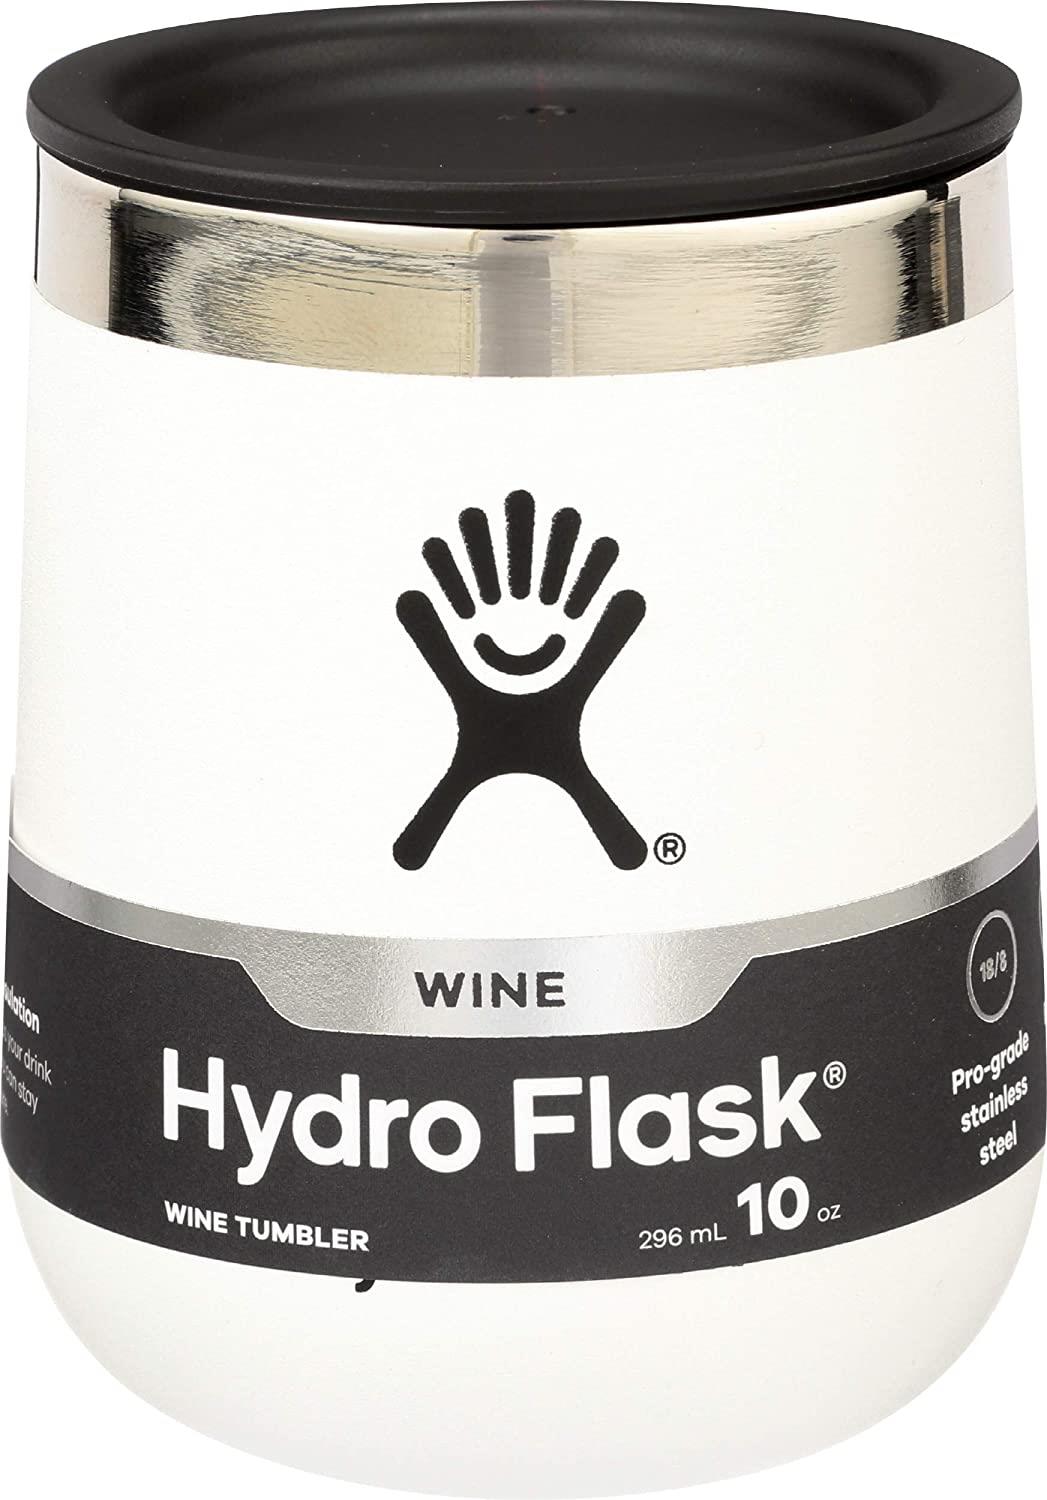 WHITE 10oz Wine Tumbler (Hydro Flask)